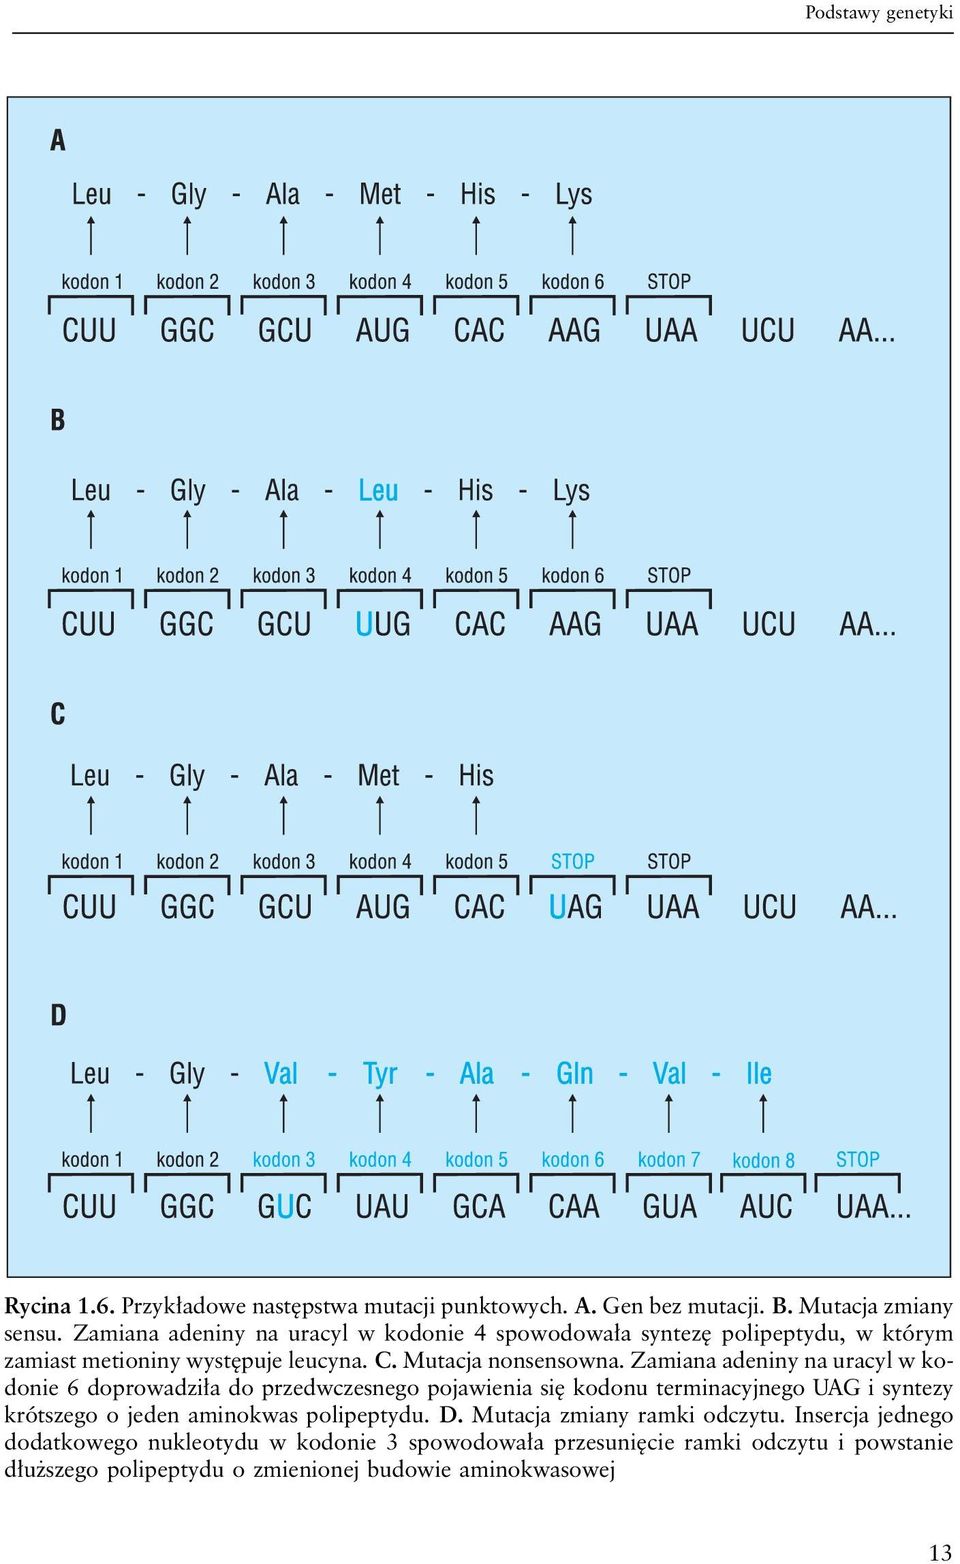 Zamiana adeniny na uracyl w kodonie 6 doprowadziła do przedwczesnego pojawienia się kodonu terminacyjnego UAG i syntezy krótszego o jeden aminokwas